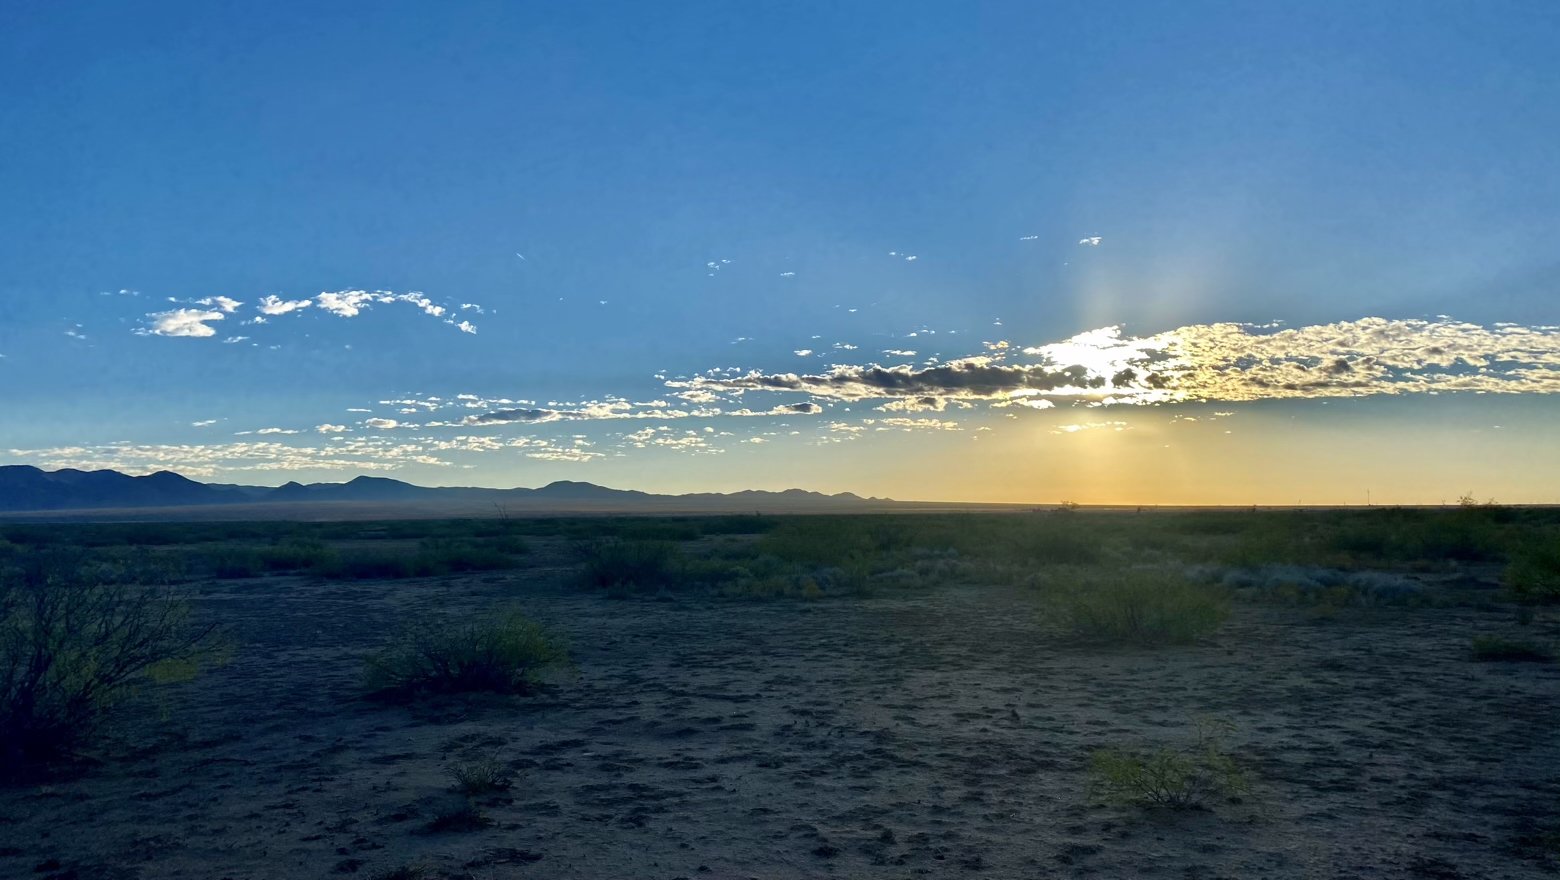 Morning dawns in the desert